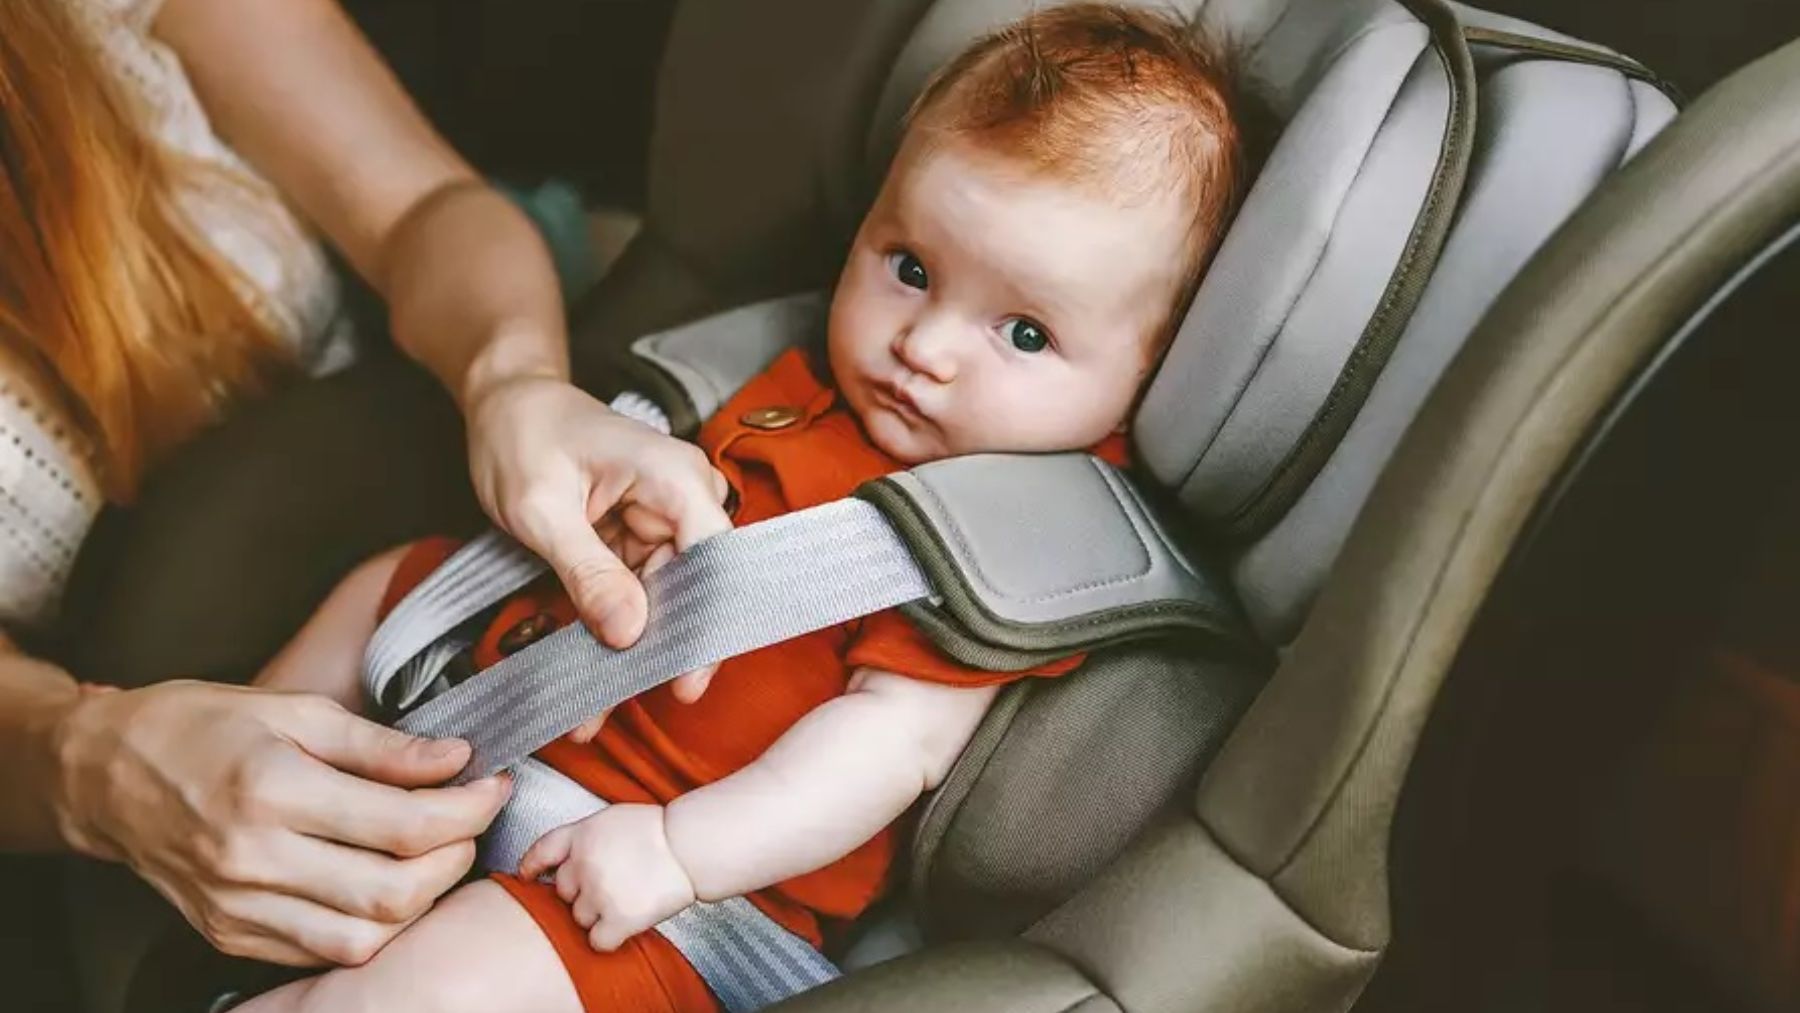 Cómo colocar una sillita de niño en el coche?